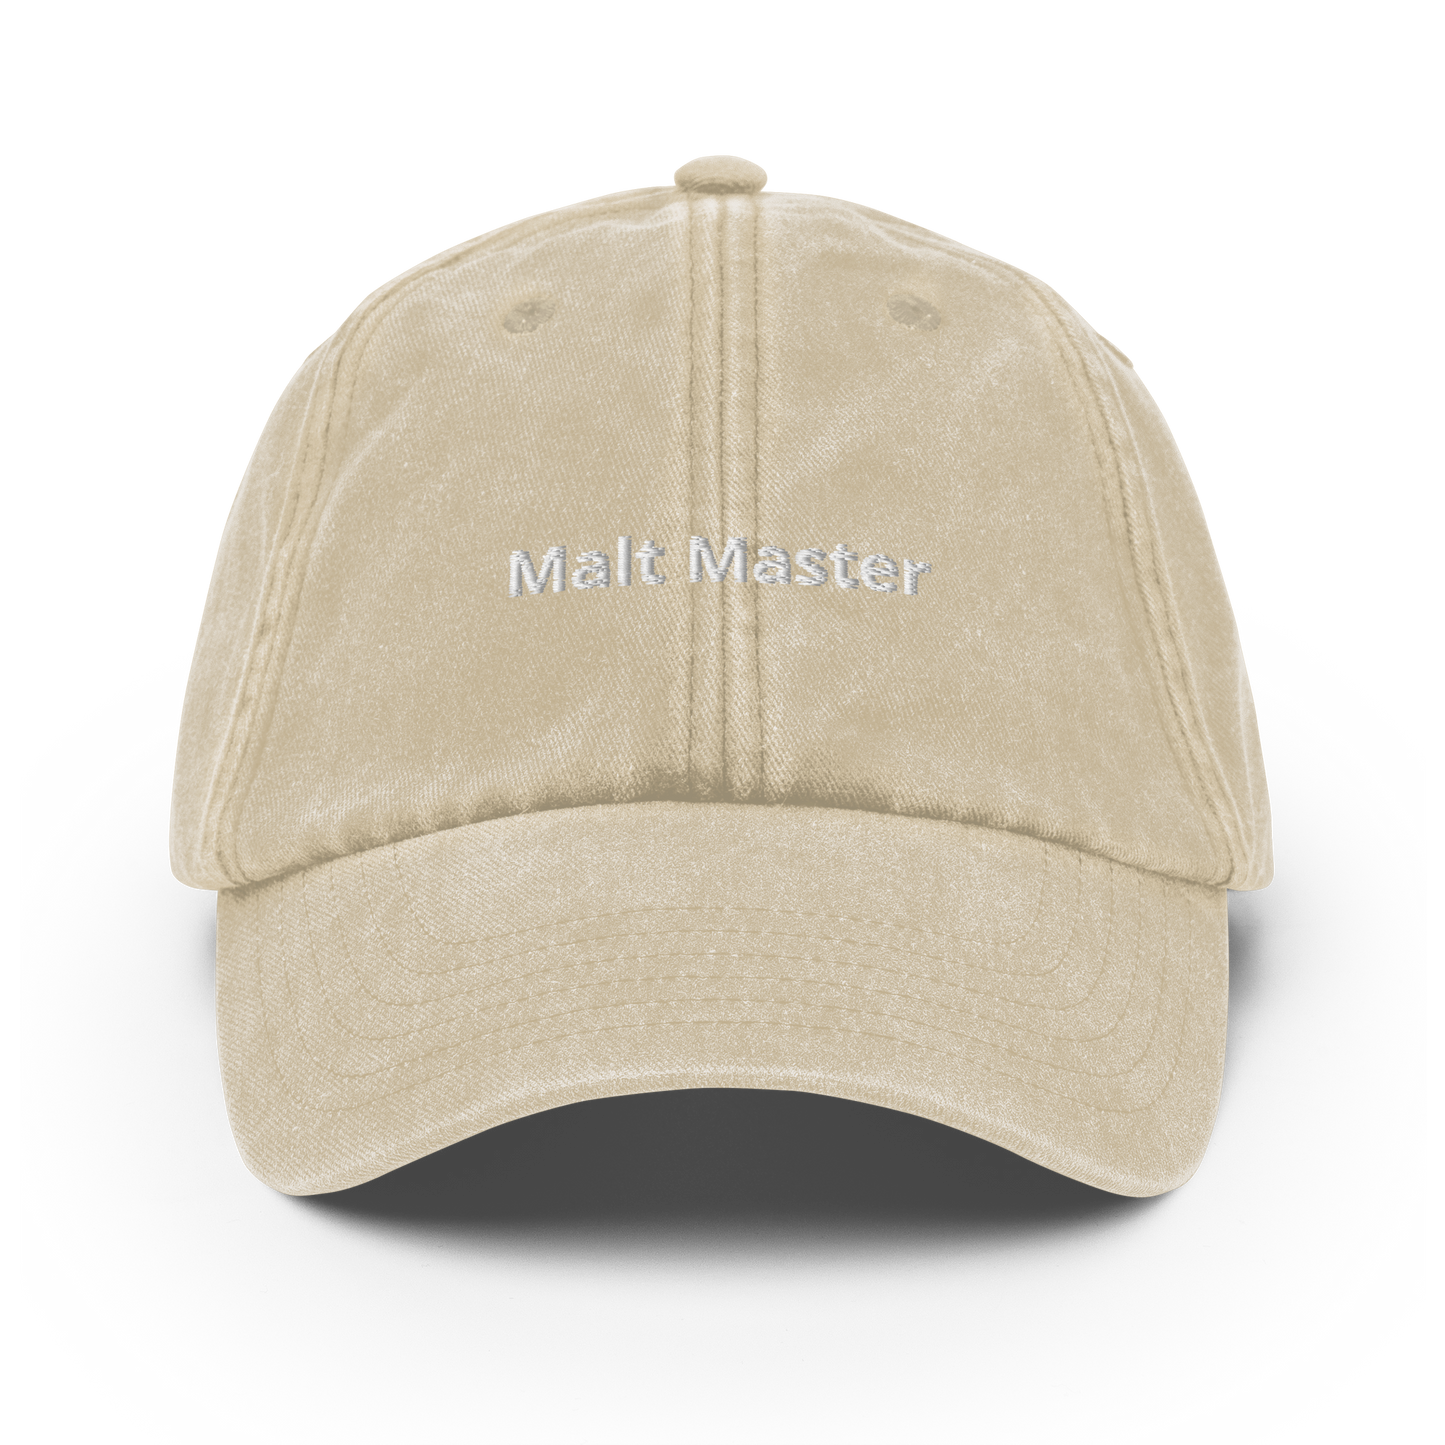 Malt Master - Vintage Hat